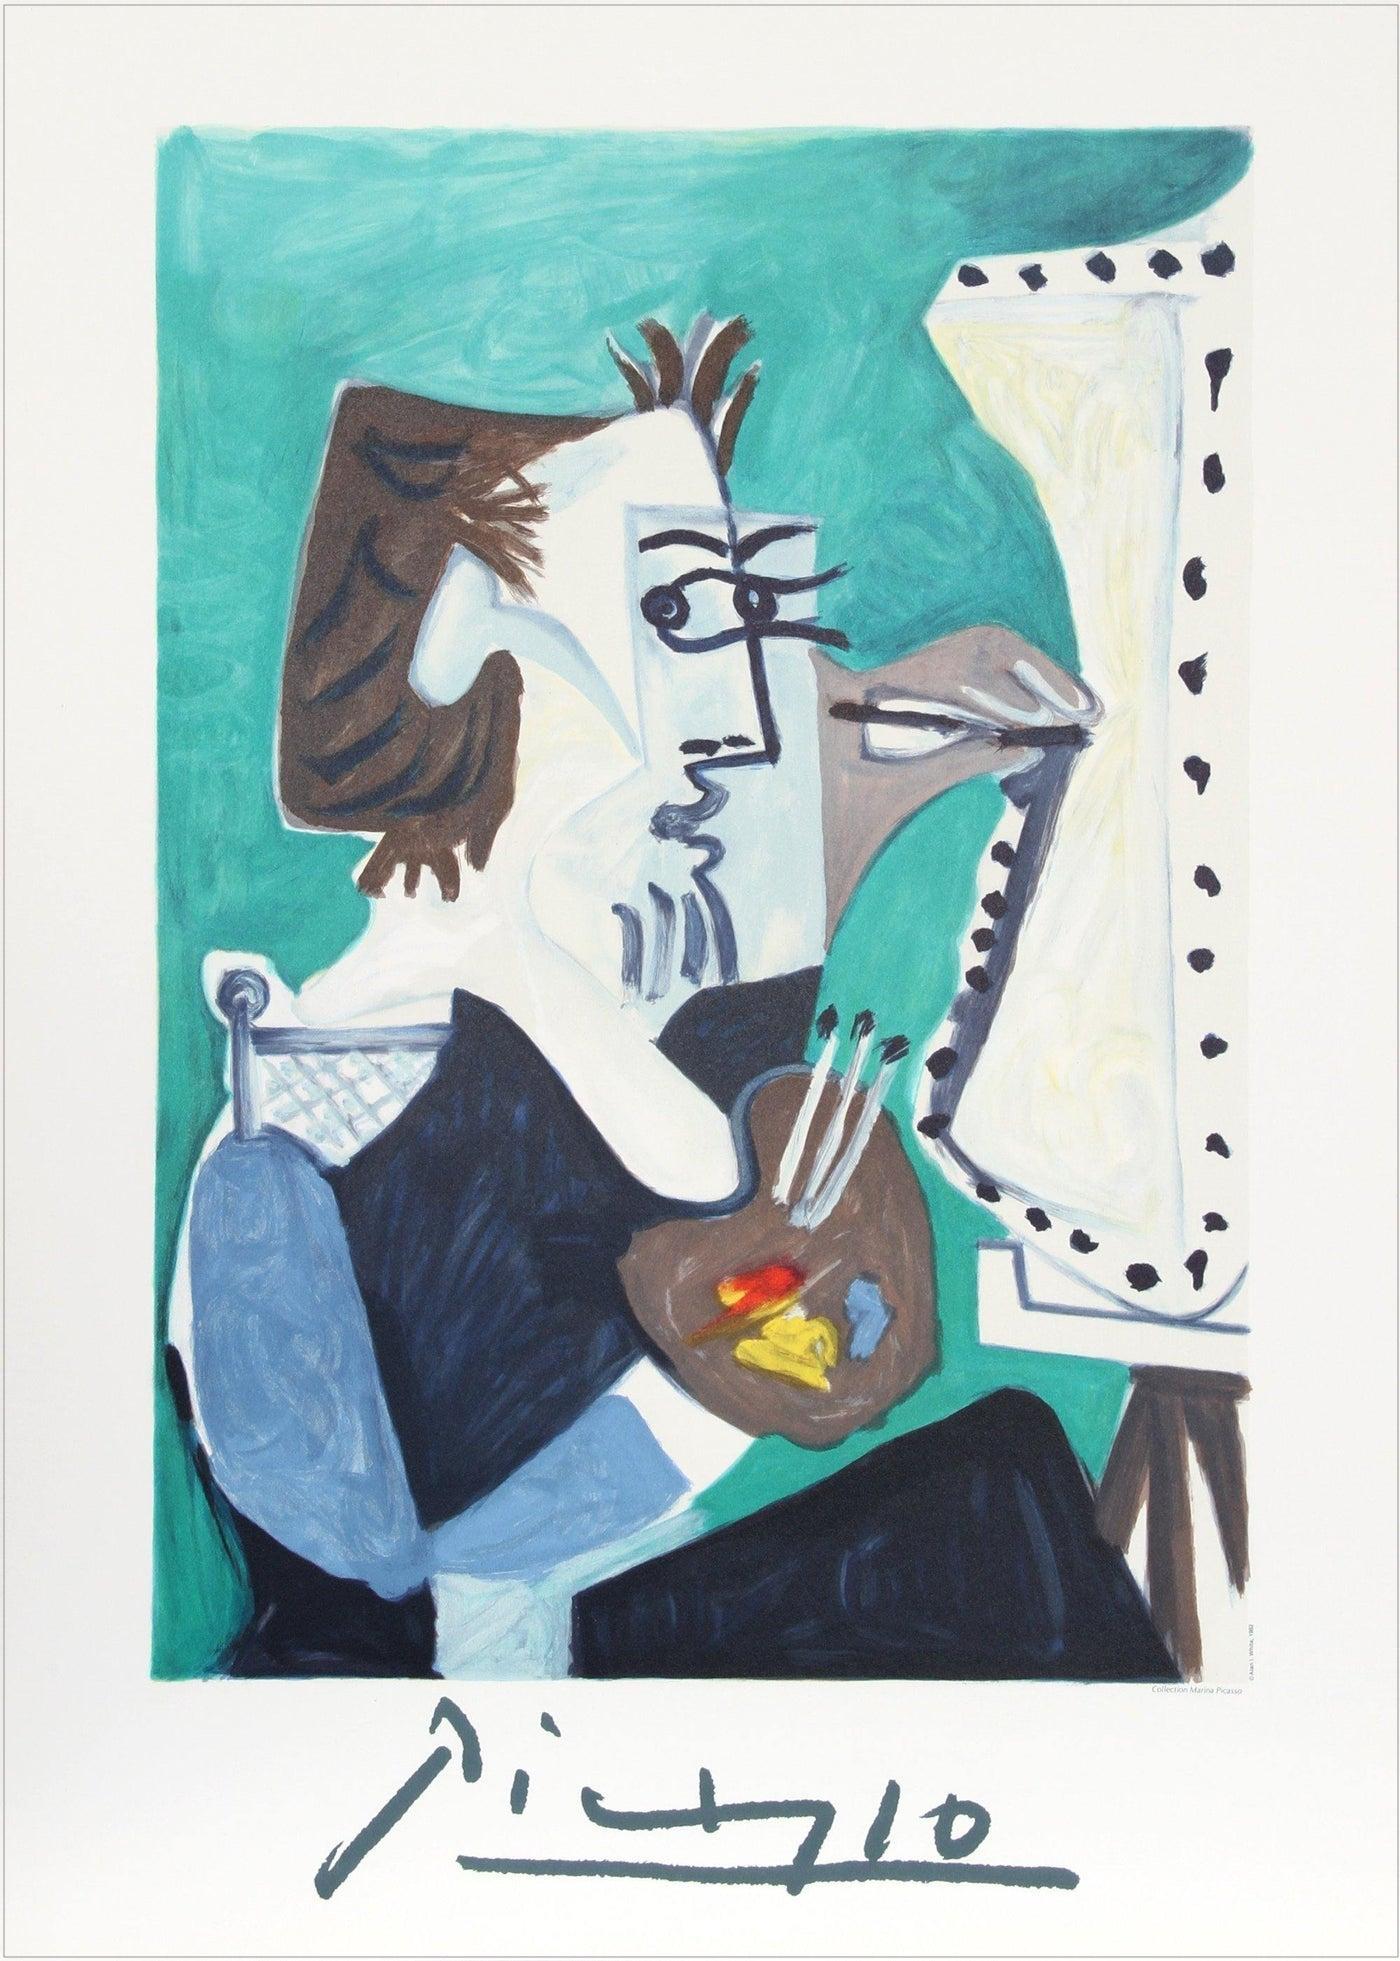 LE PEINTRE Lithograph, Artist Portrait, Painter at his Easel, Cool Green, Blue